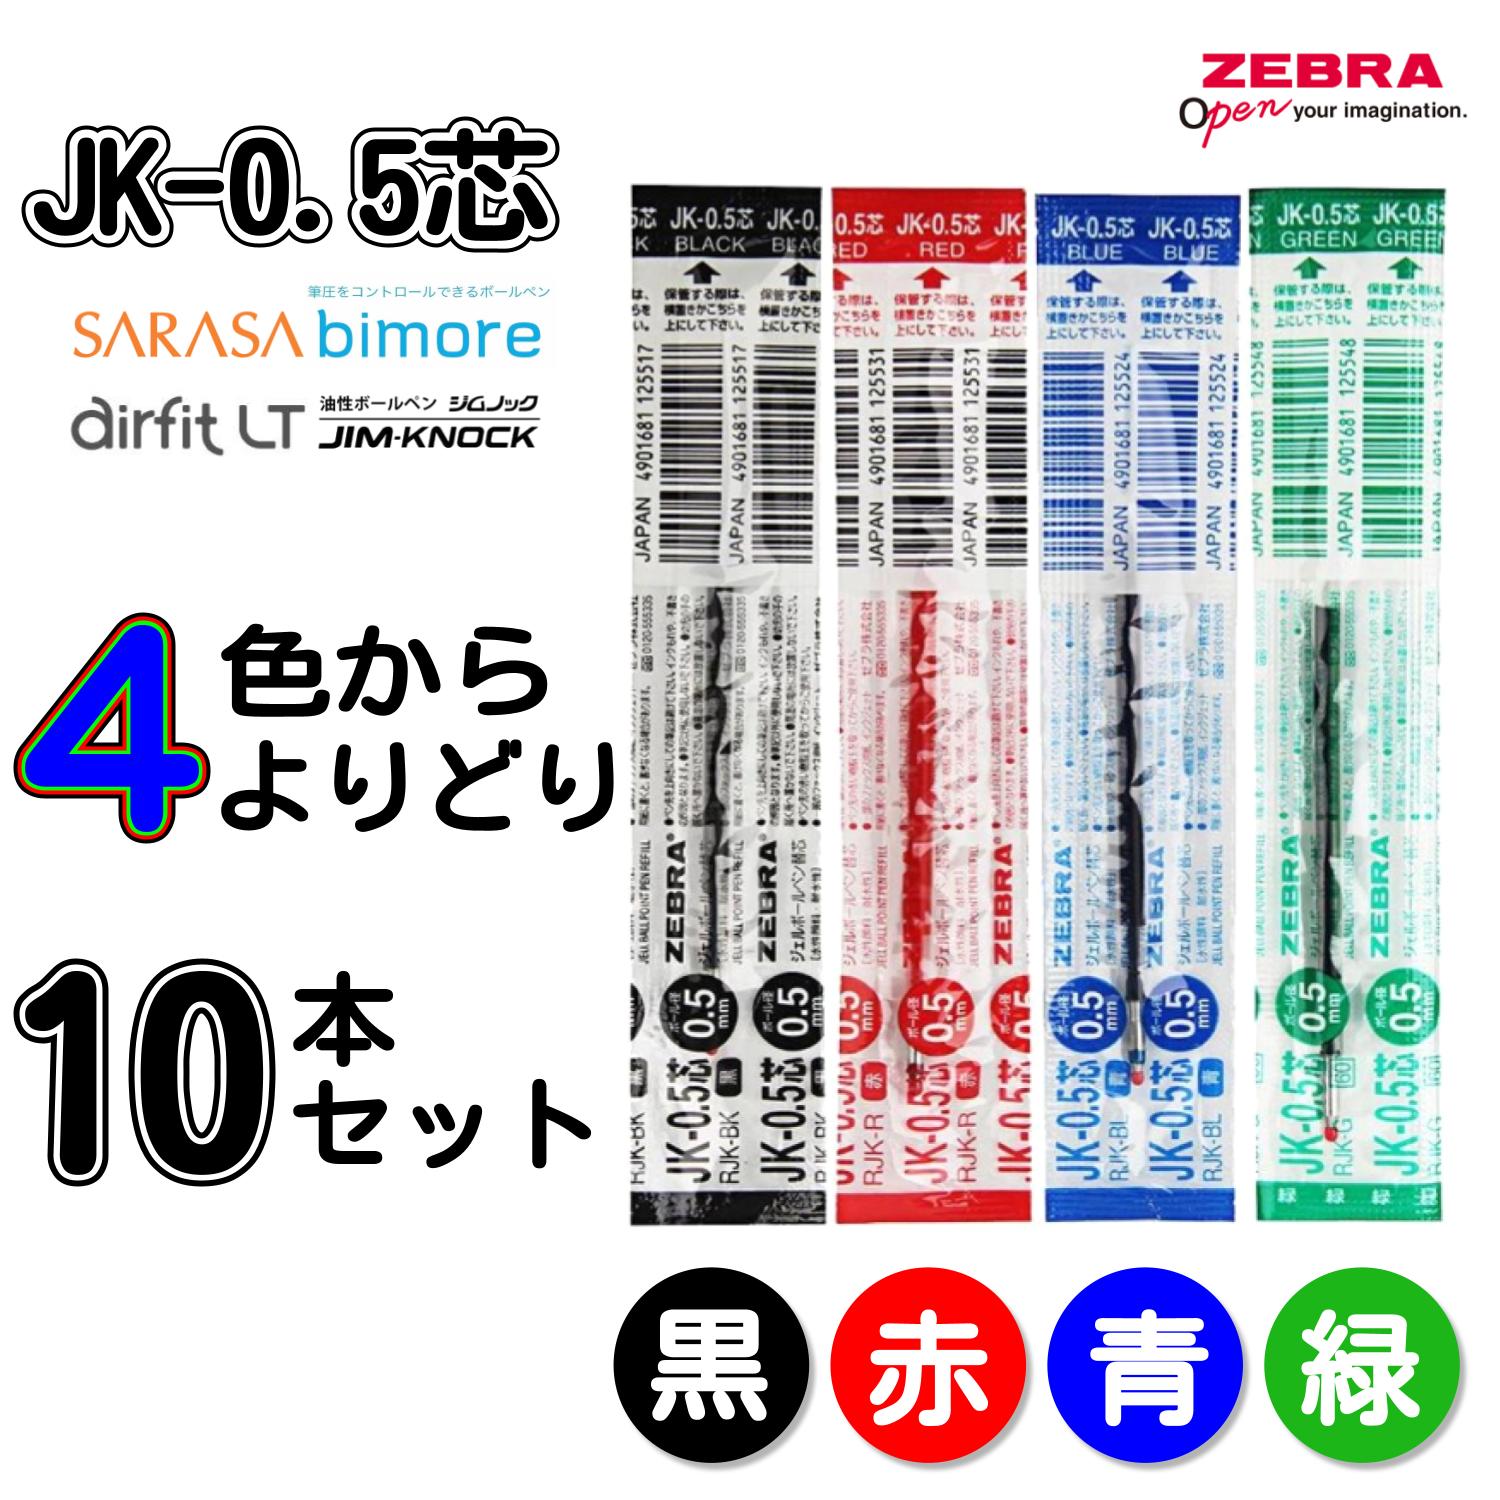 JK-0.5芯 サラサ3 サラサ4 サラサ2 よりどり選べる10本セット ジェル ボールペン替え芯 替芯 0.5mm 黒 赤 青 緑 RJK-BK RJK-BL RJK-R RJK-G ゼブラ SARASA3